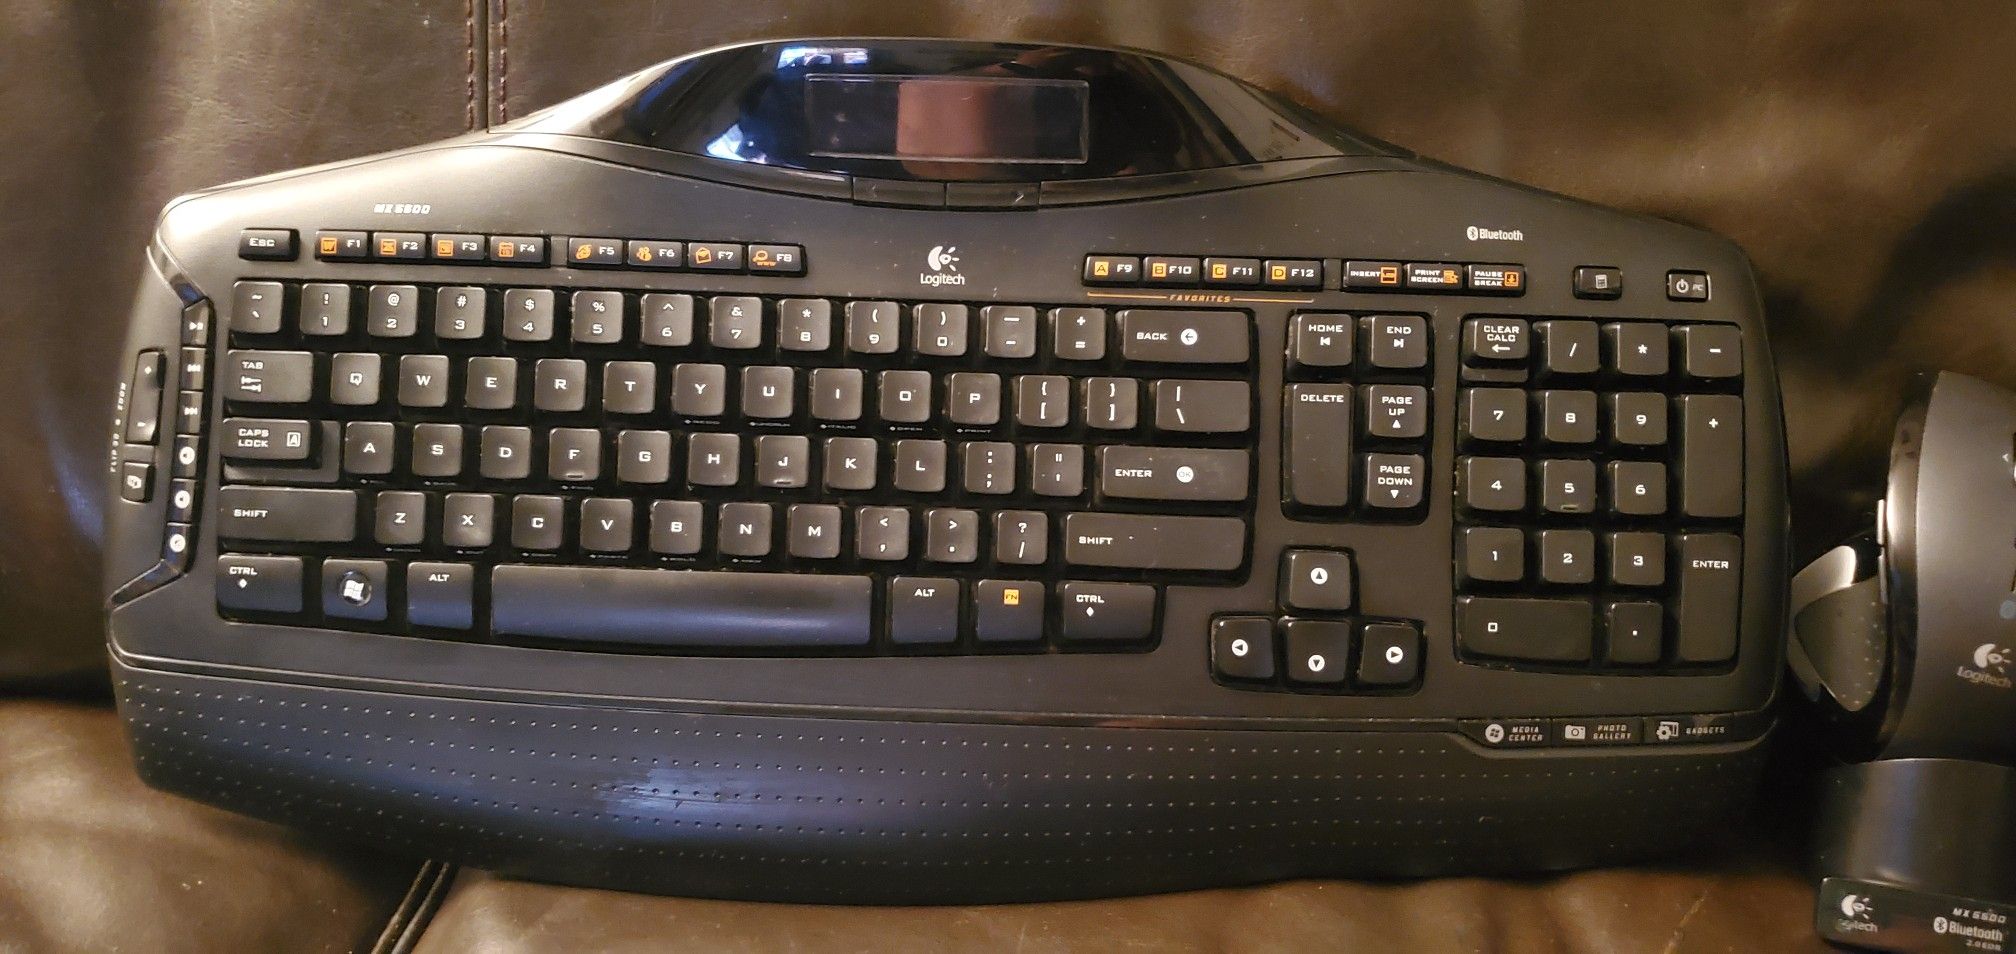 Logitech mx5500 wireless keyboard and mouse